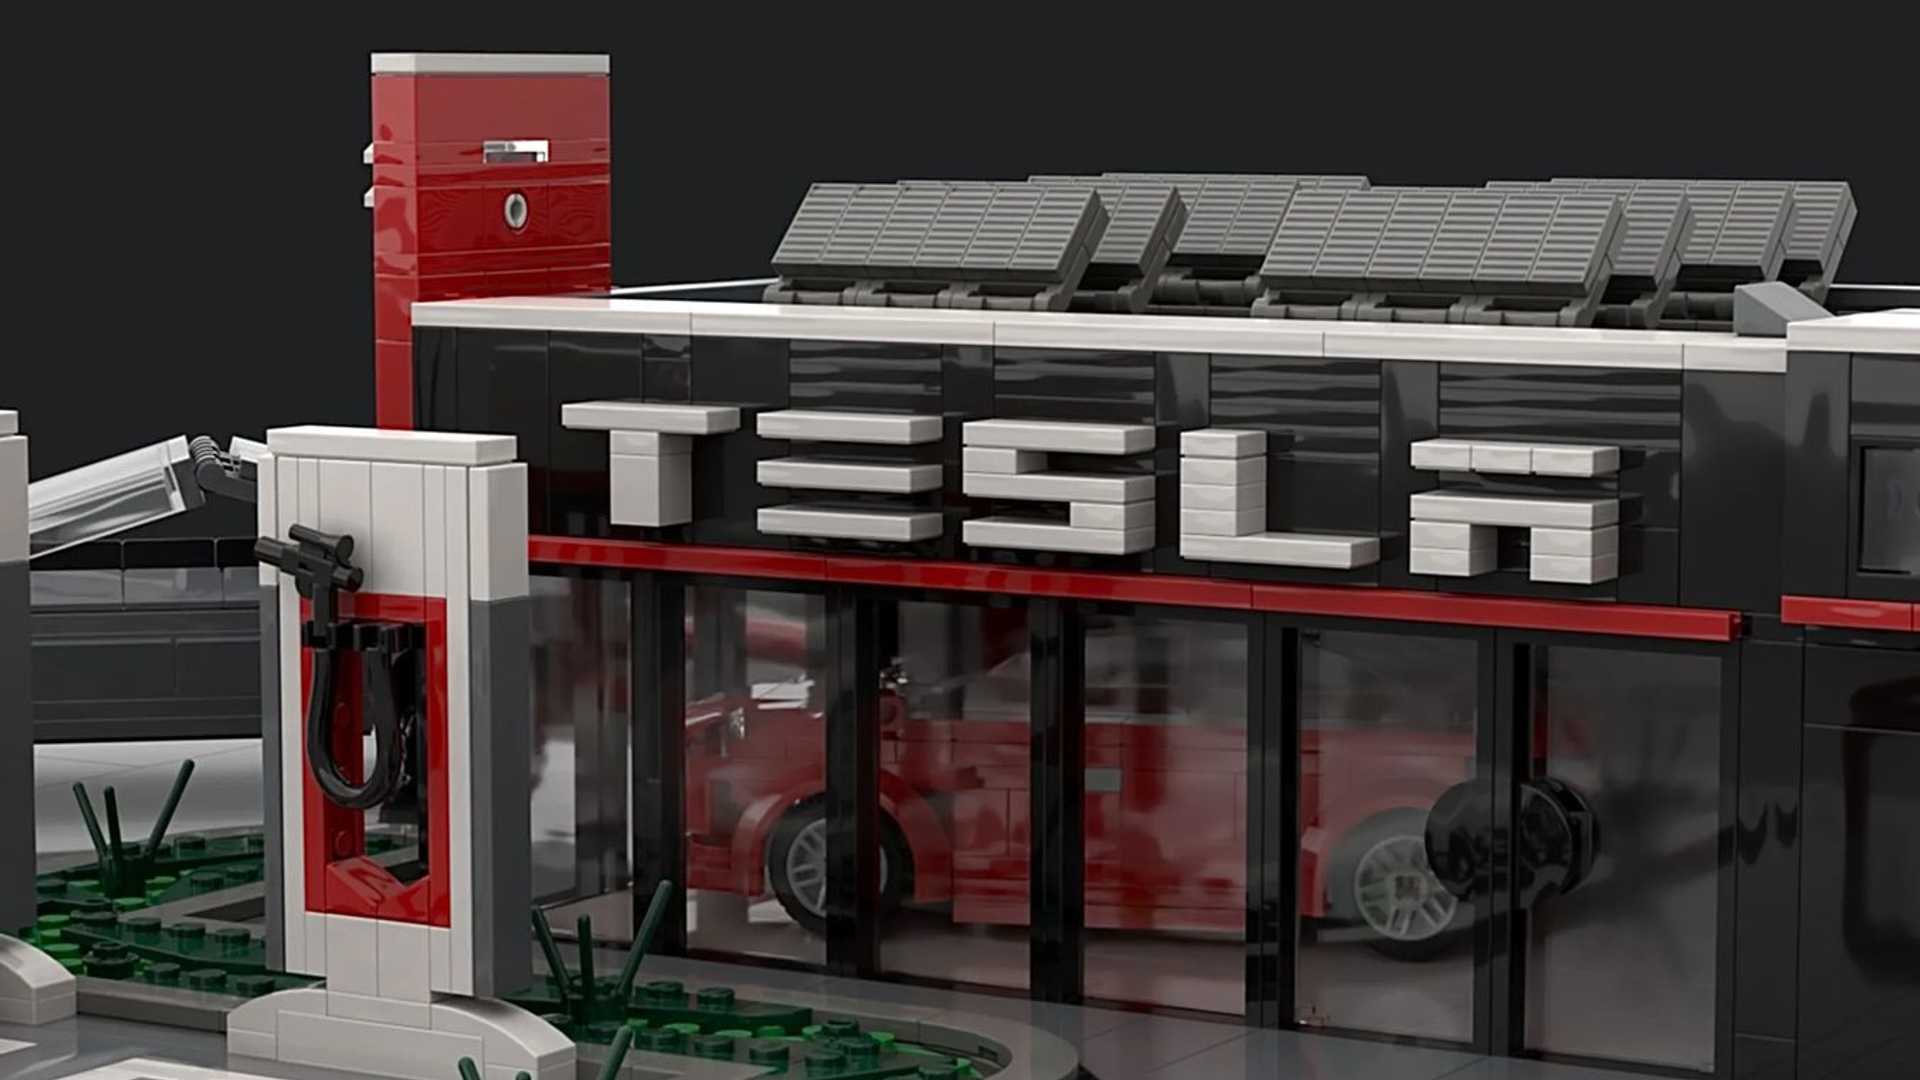 tesla supercharger station lego set needs your support